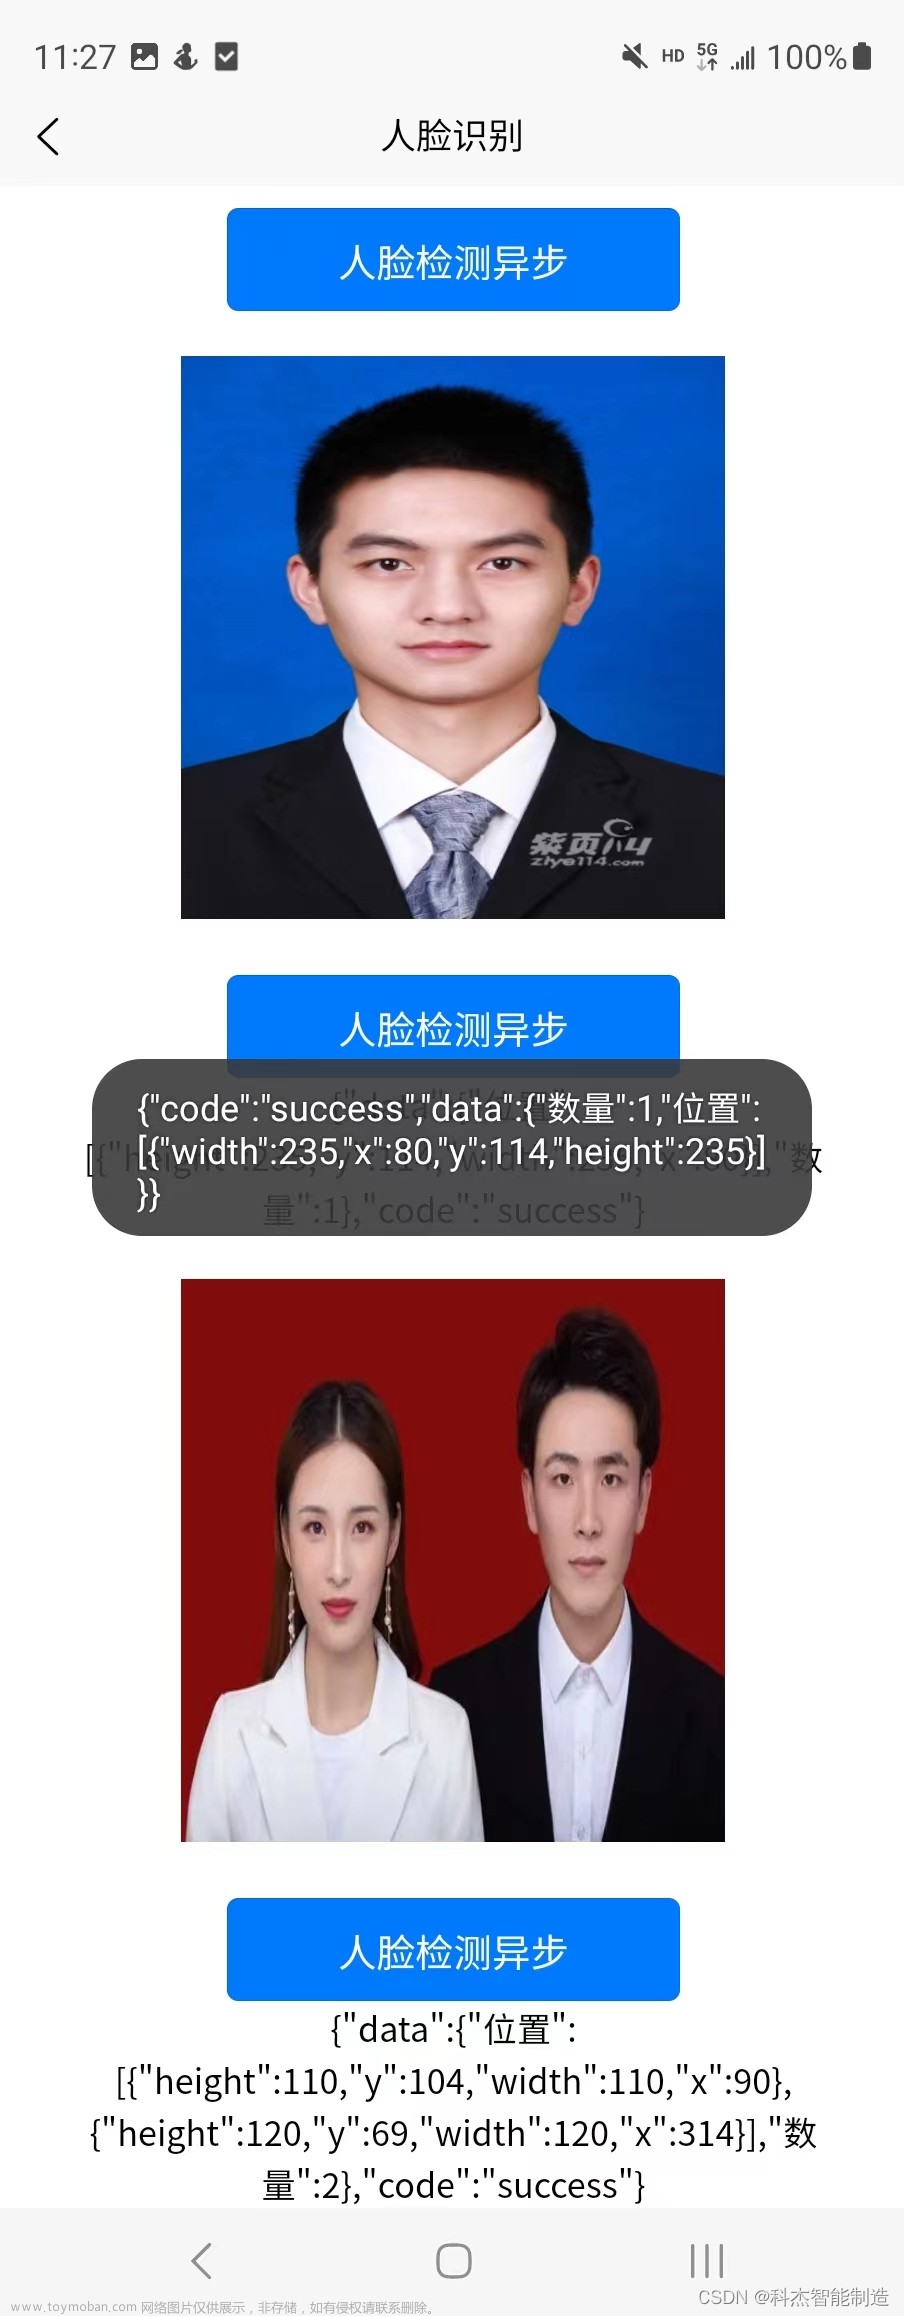 Uniapp 调用 原生安卓方法 使用cv 实现图片人脸识别 返回人脸位置和人脸数量